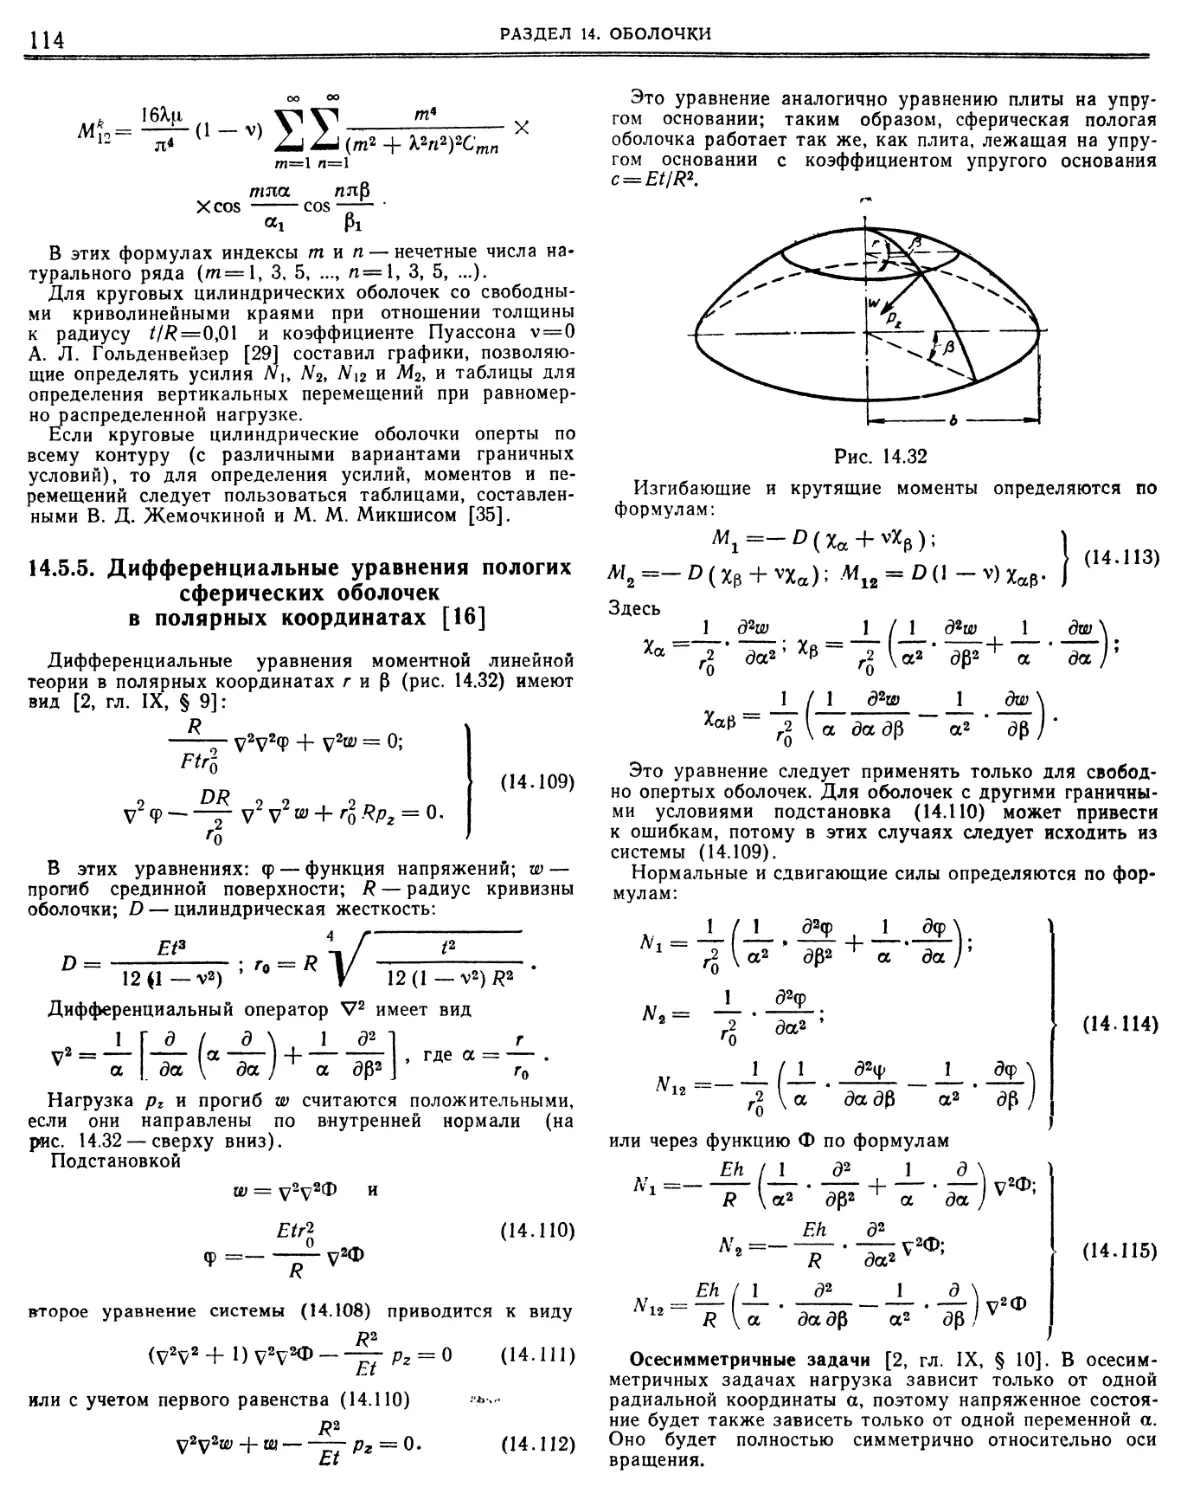 14.5.5. Дифференциальные уравнения пологих сферических оболочек в полярных координатах